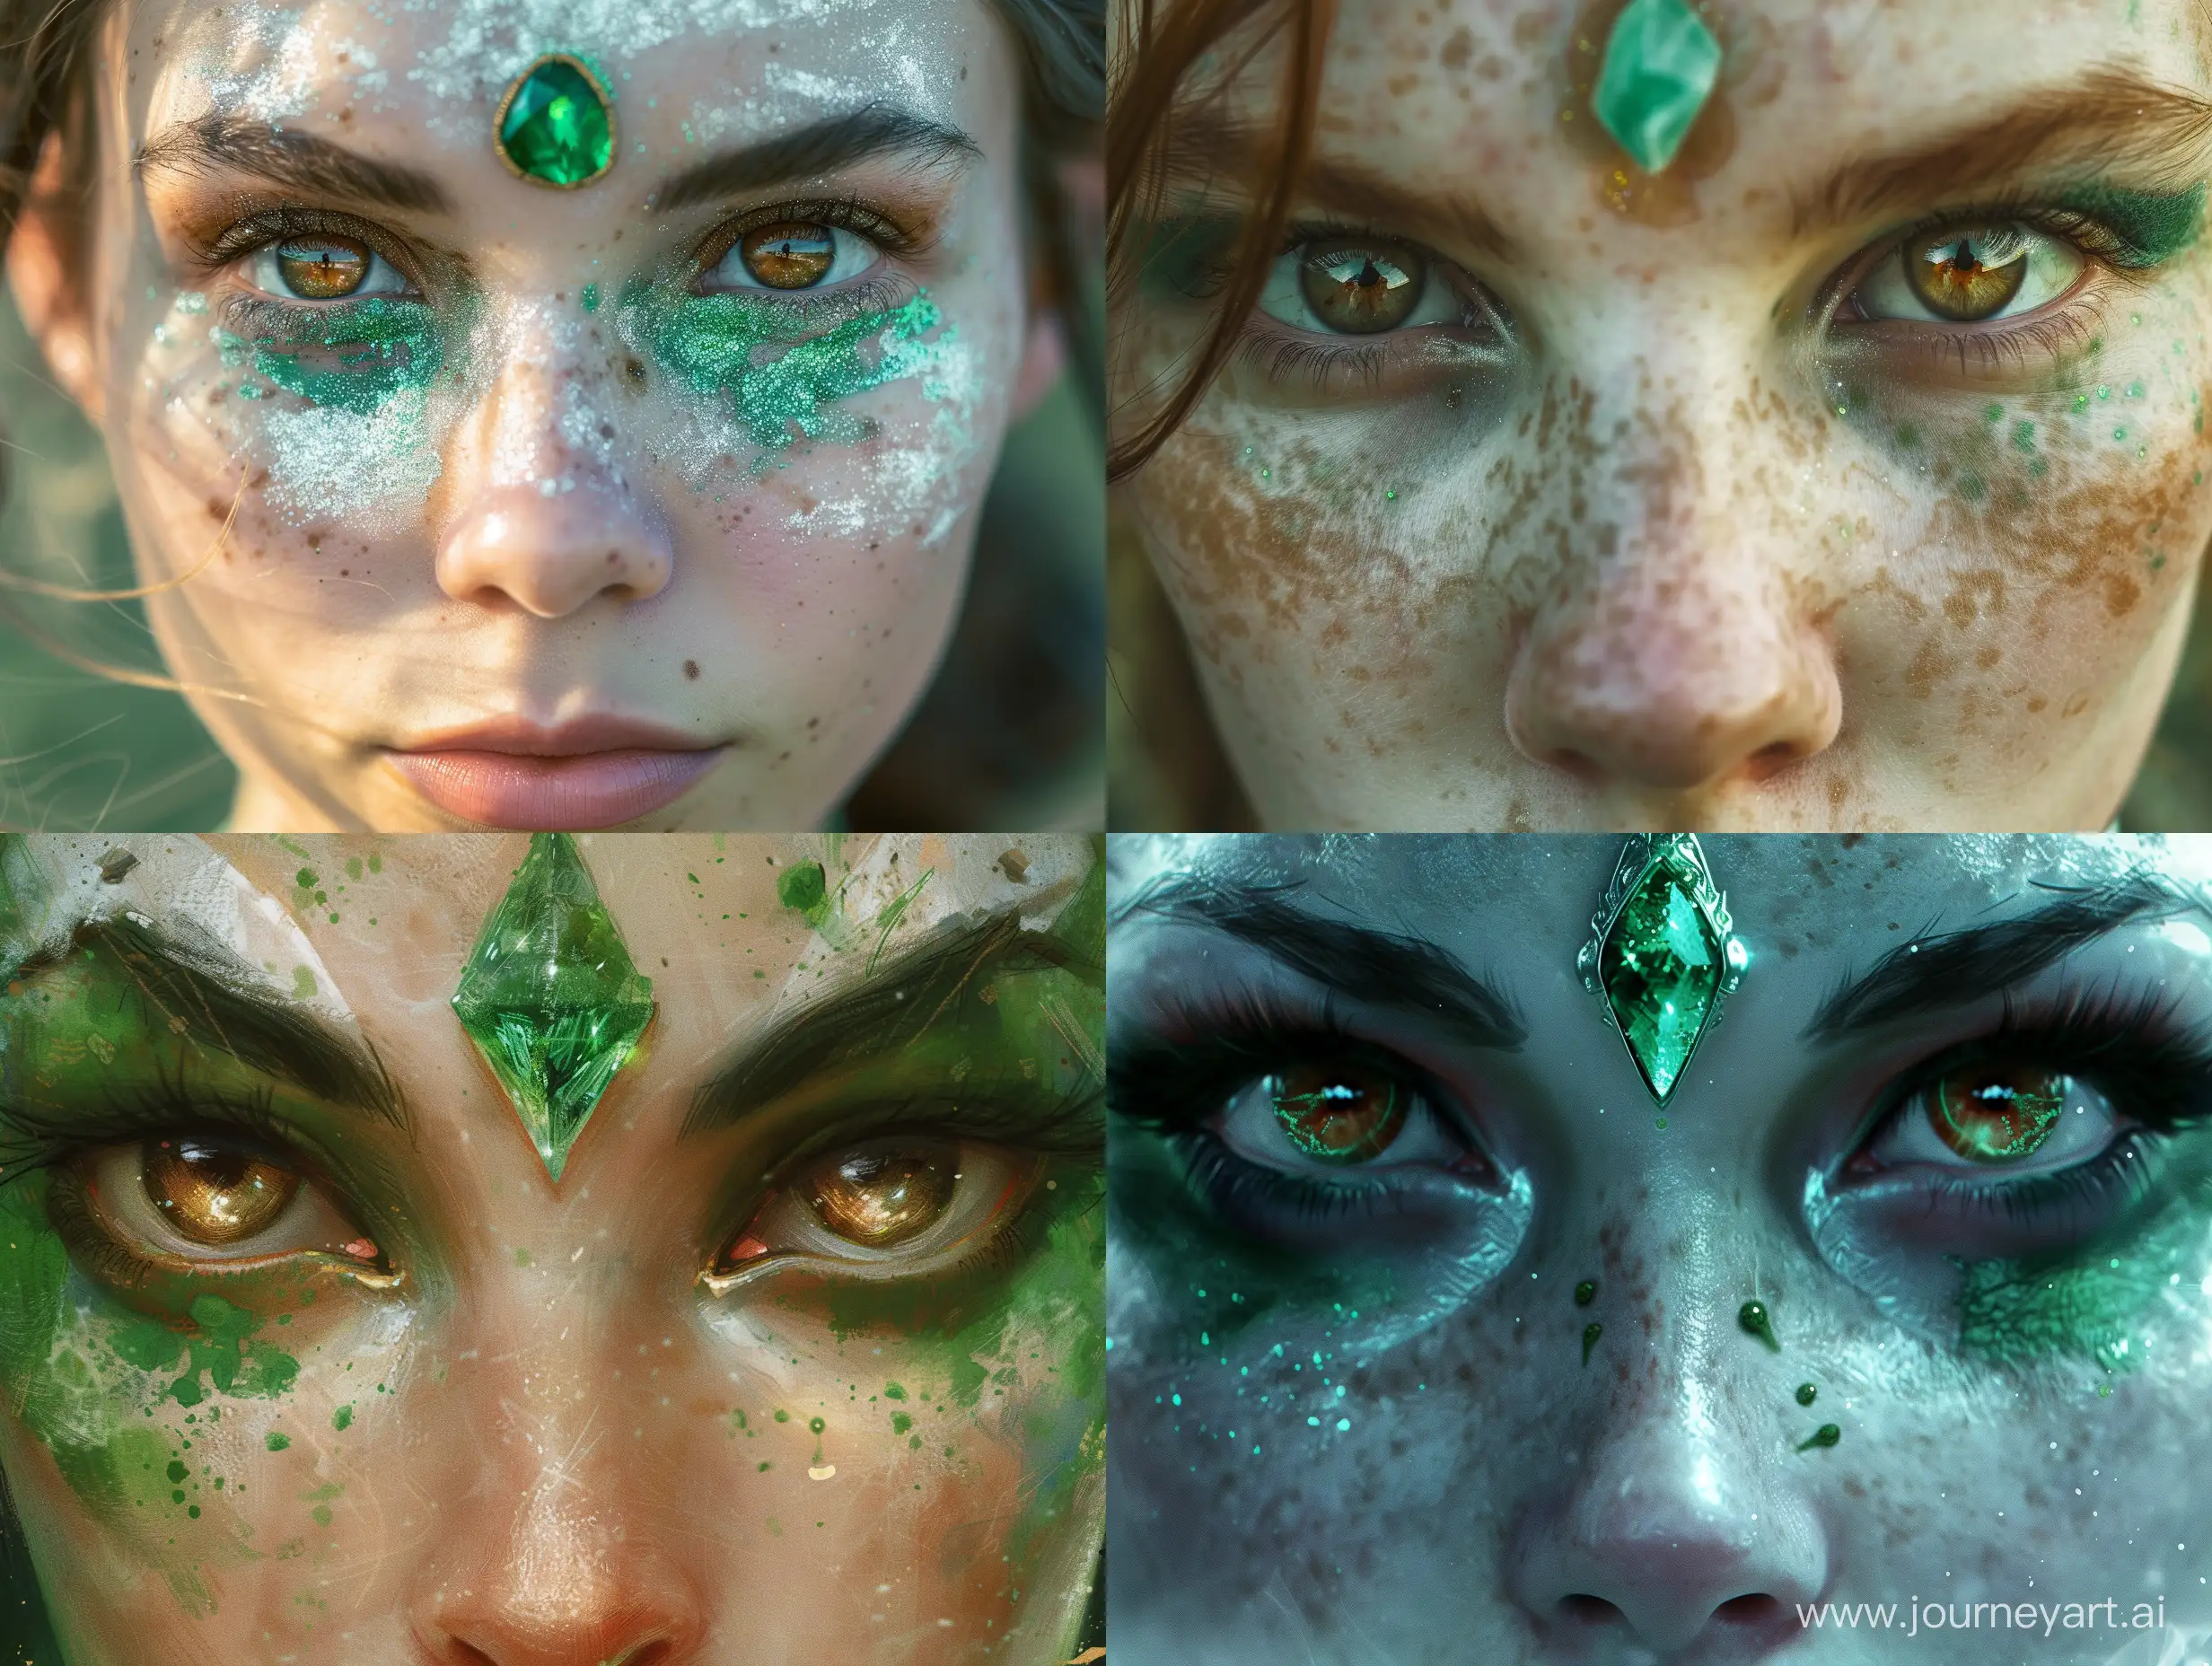 крупным планом магическое лицо жрицы, с третьим глазом из зеленого кристалла, жрица сильный маг,  Открытые глаза смотрят прямо, глаза карие  с зелеными крапинками